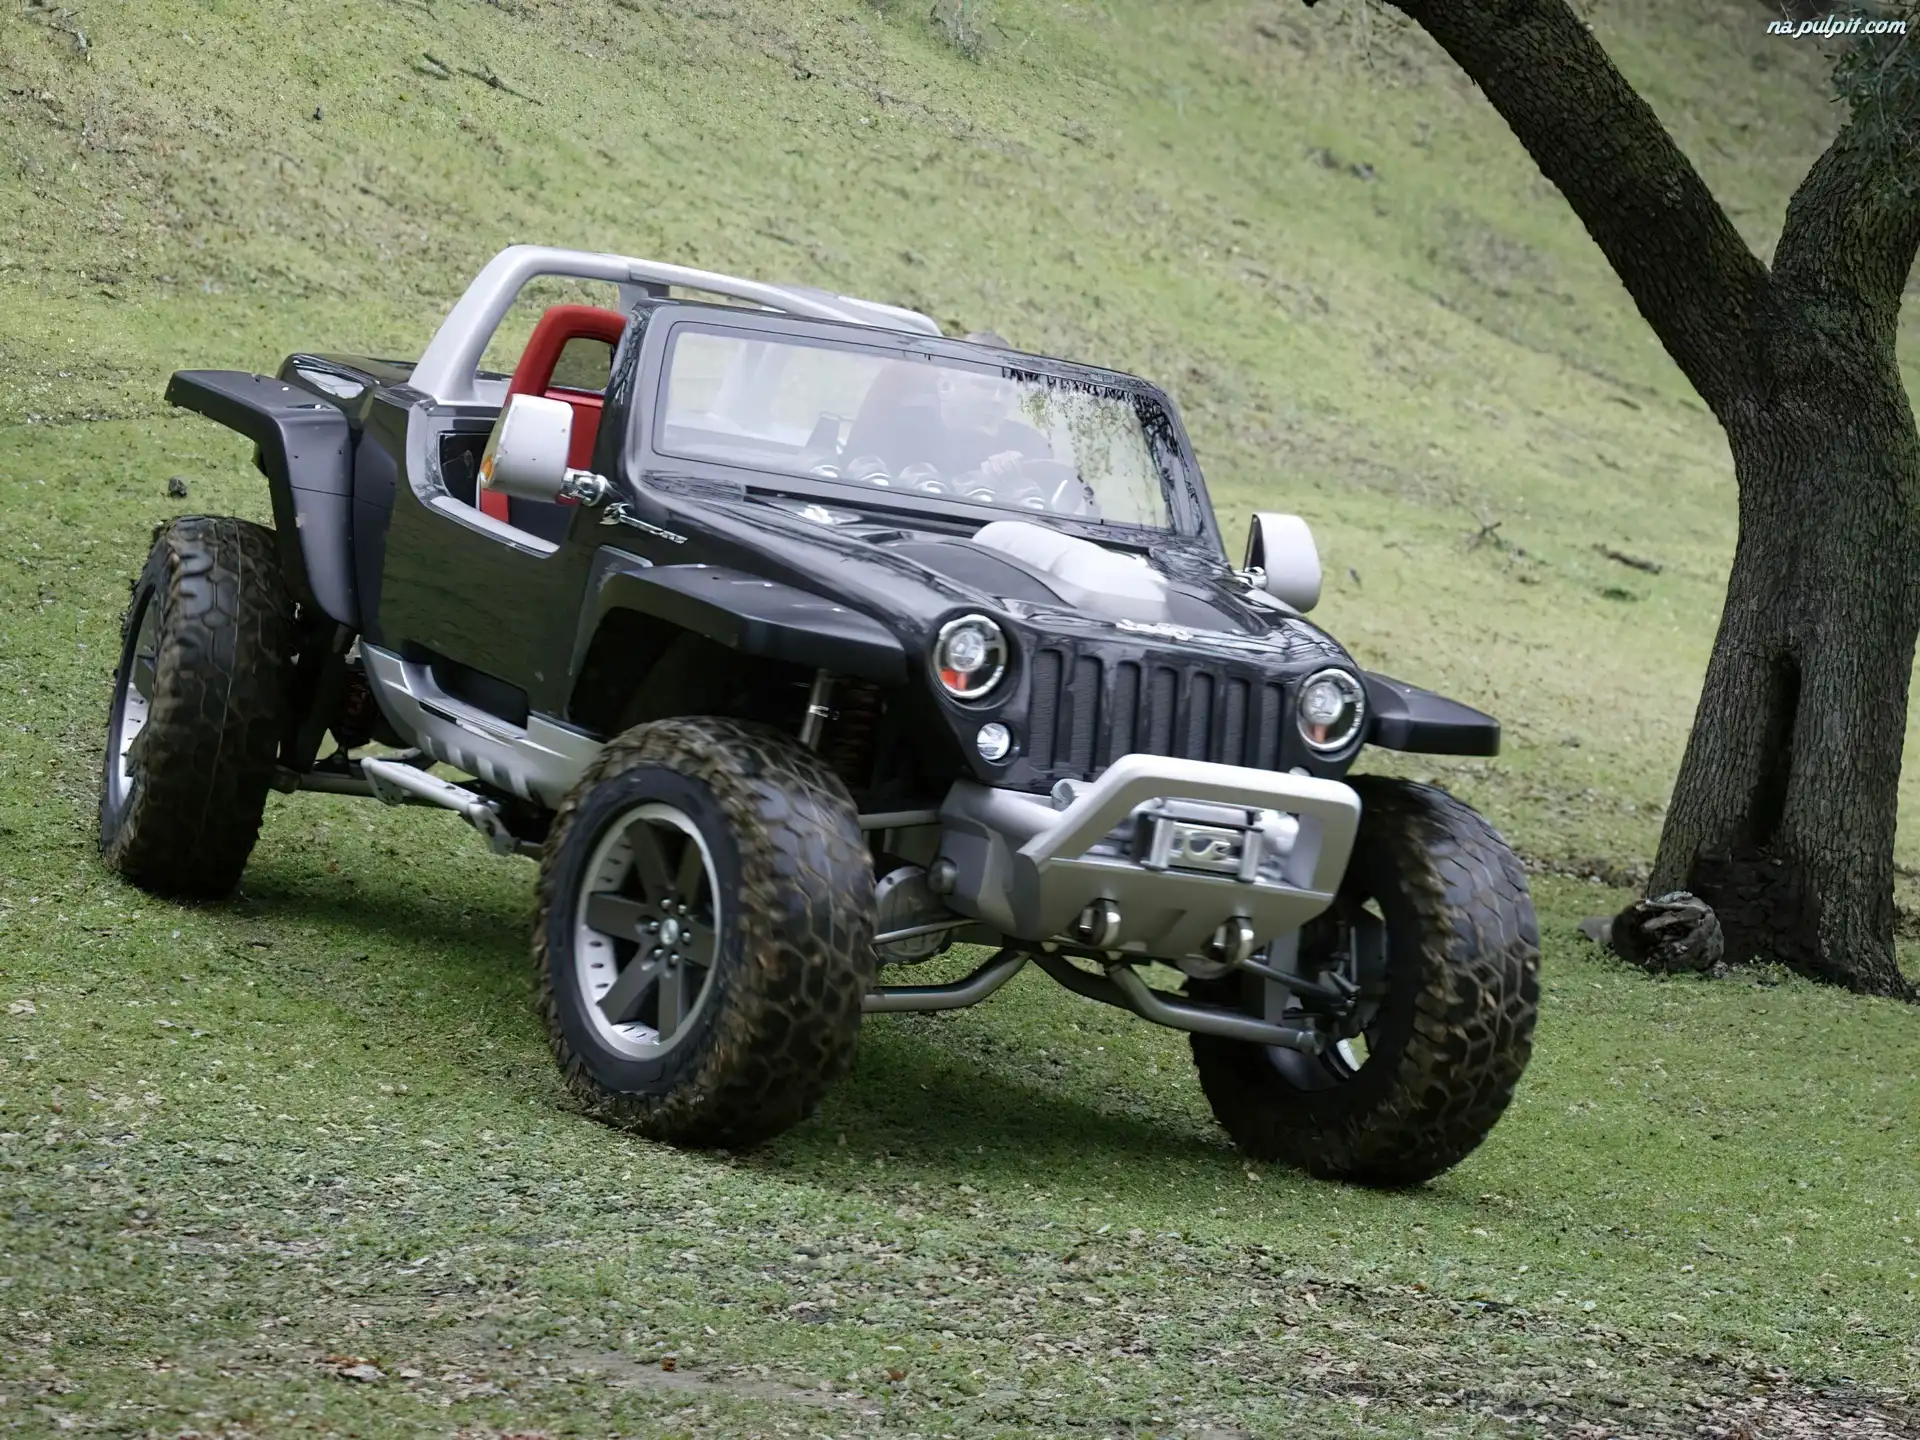 Jeep, Prototyp